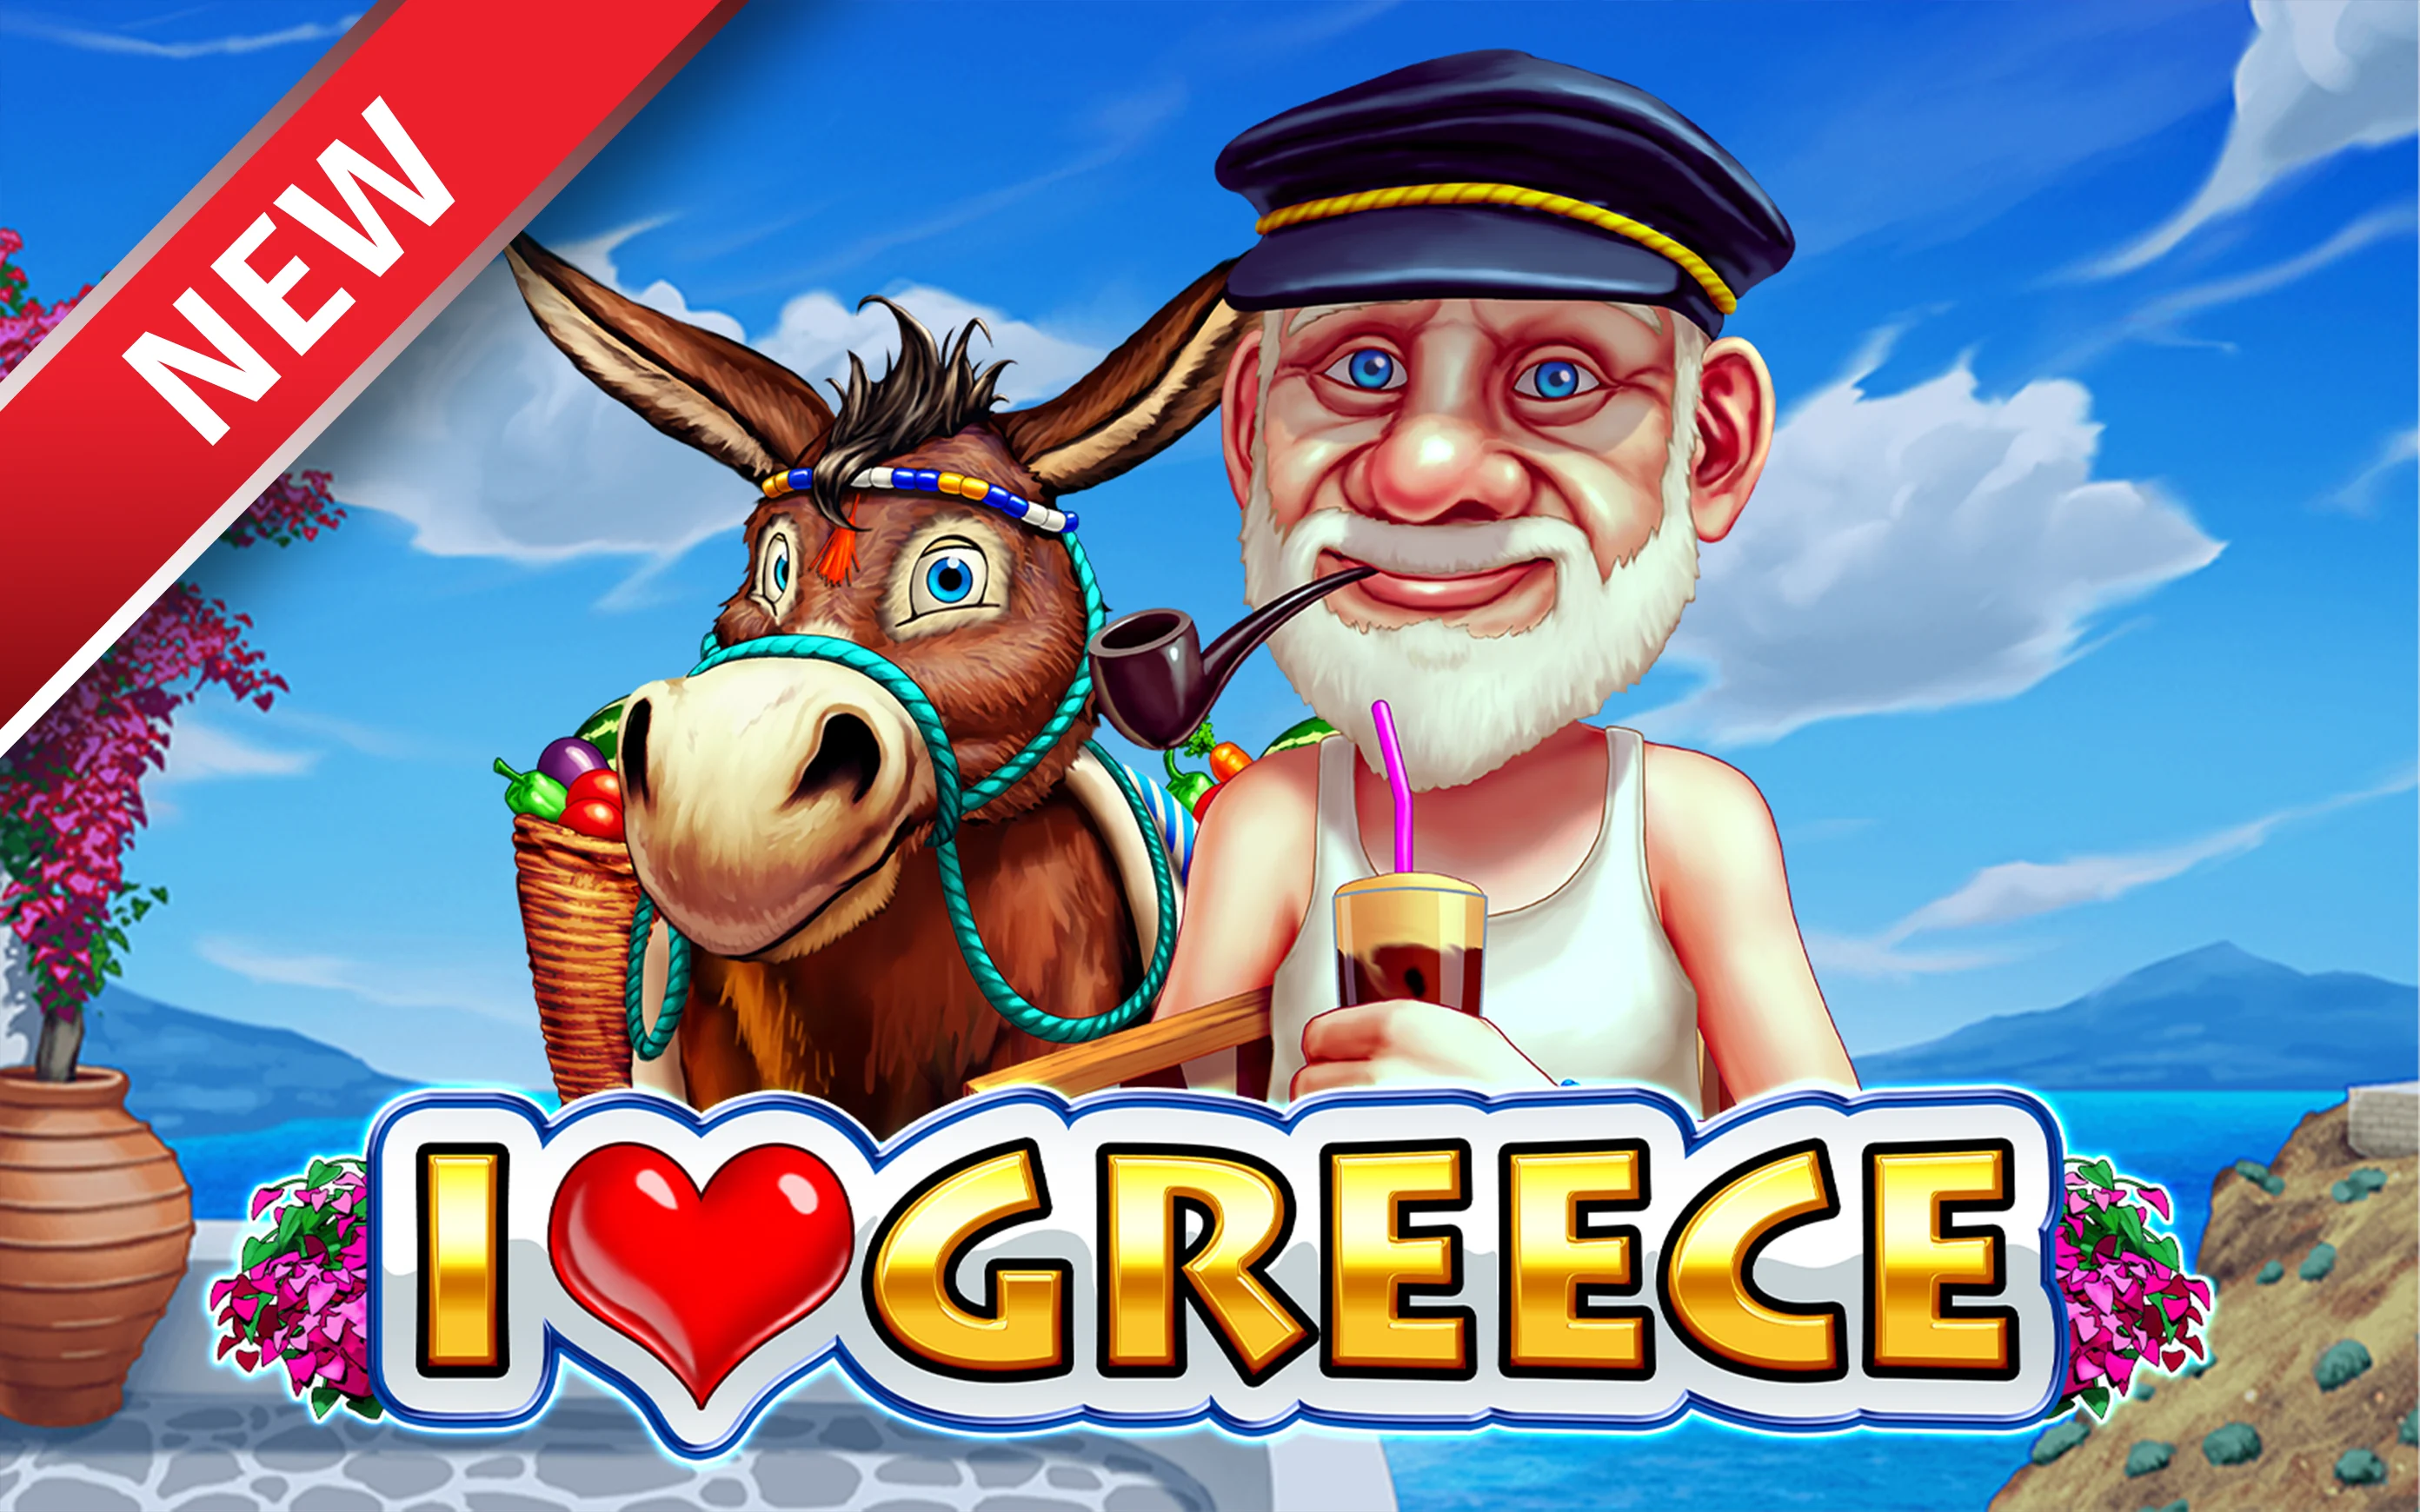 Speel I Love Greece op Starcasino.be online casino